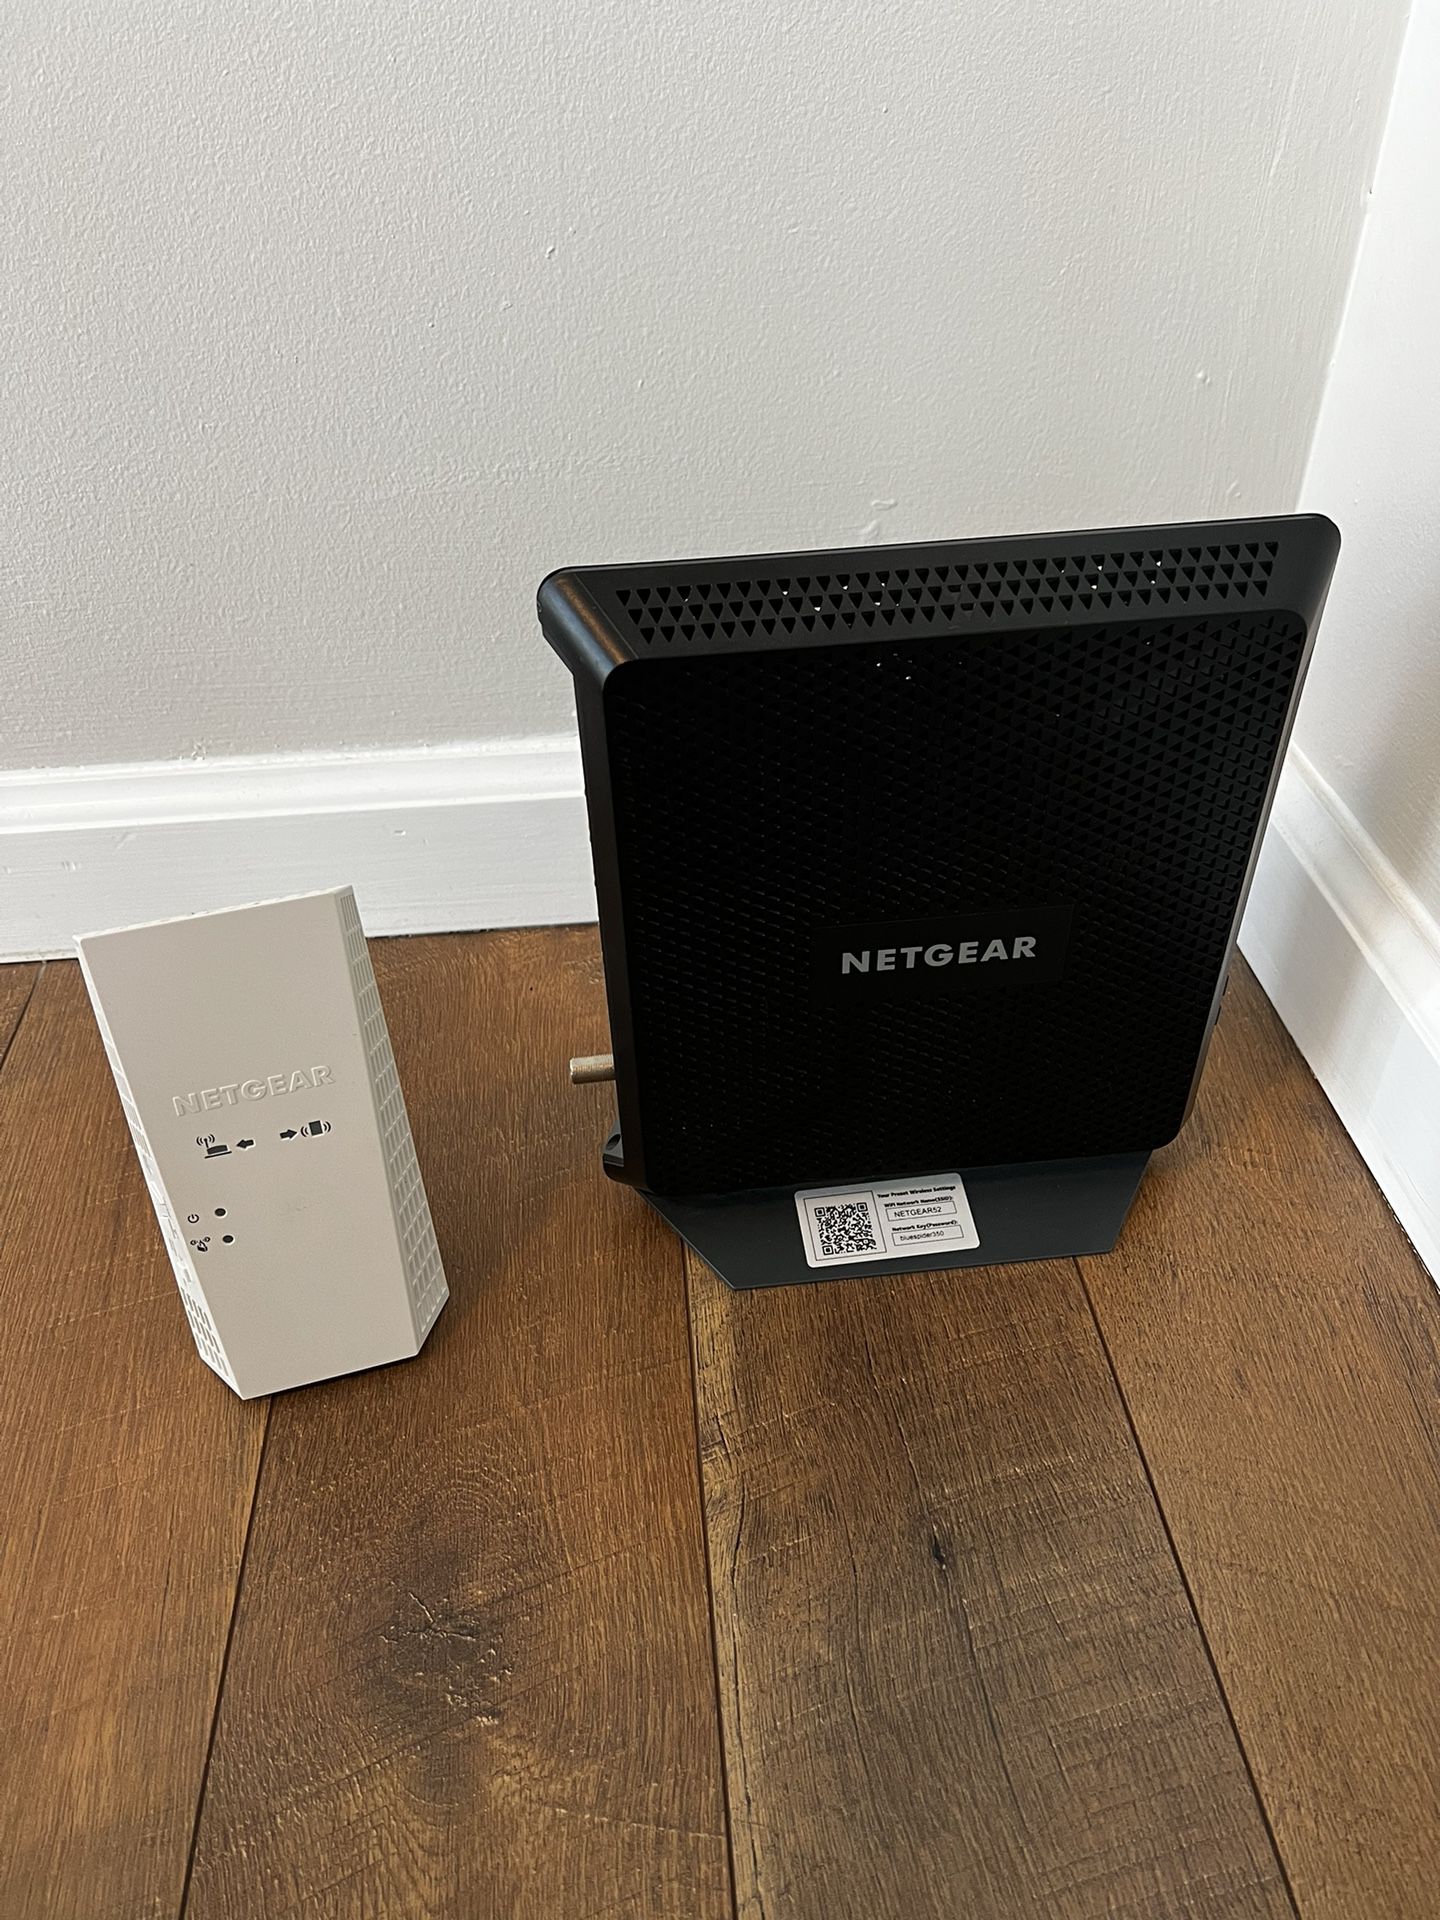 Netgear Nighthawk Router And Wifi Extender 